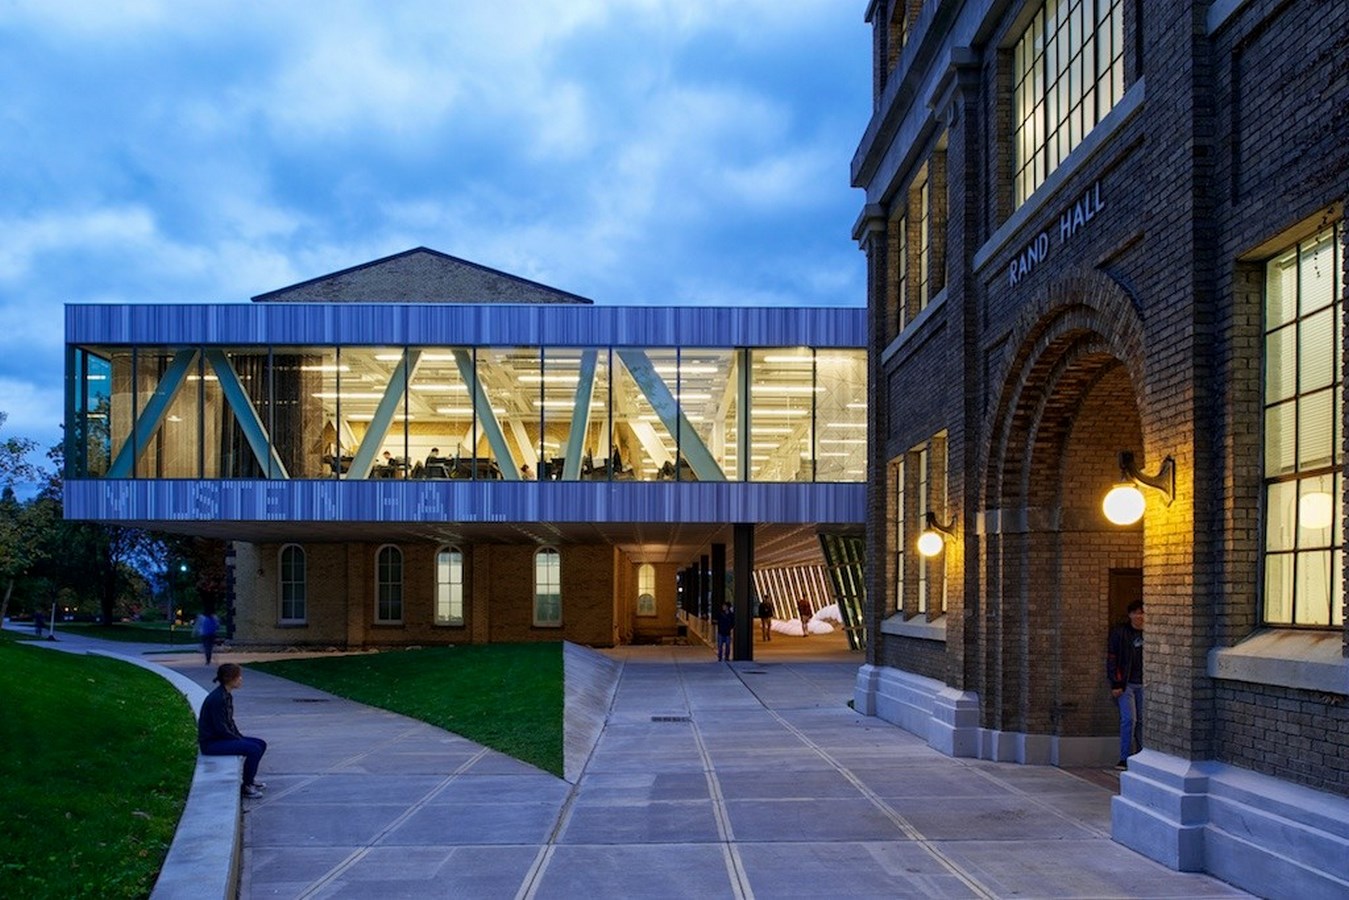  Milstein Hall at Cornell University